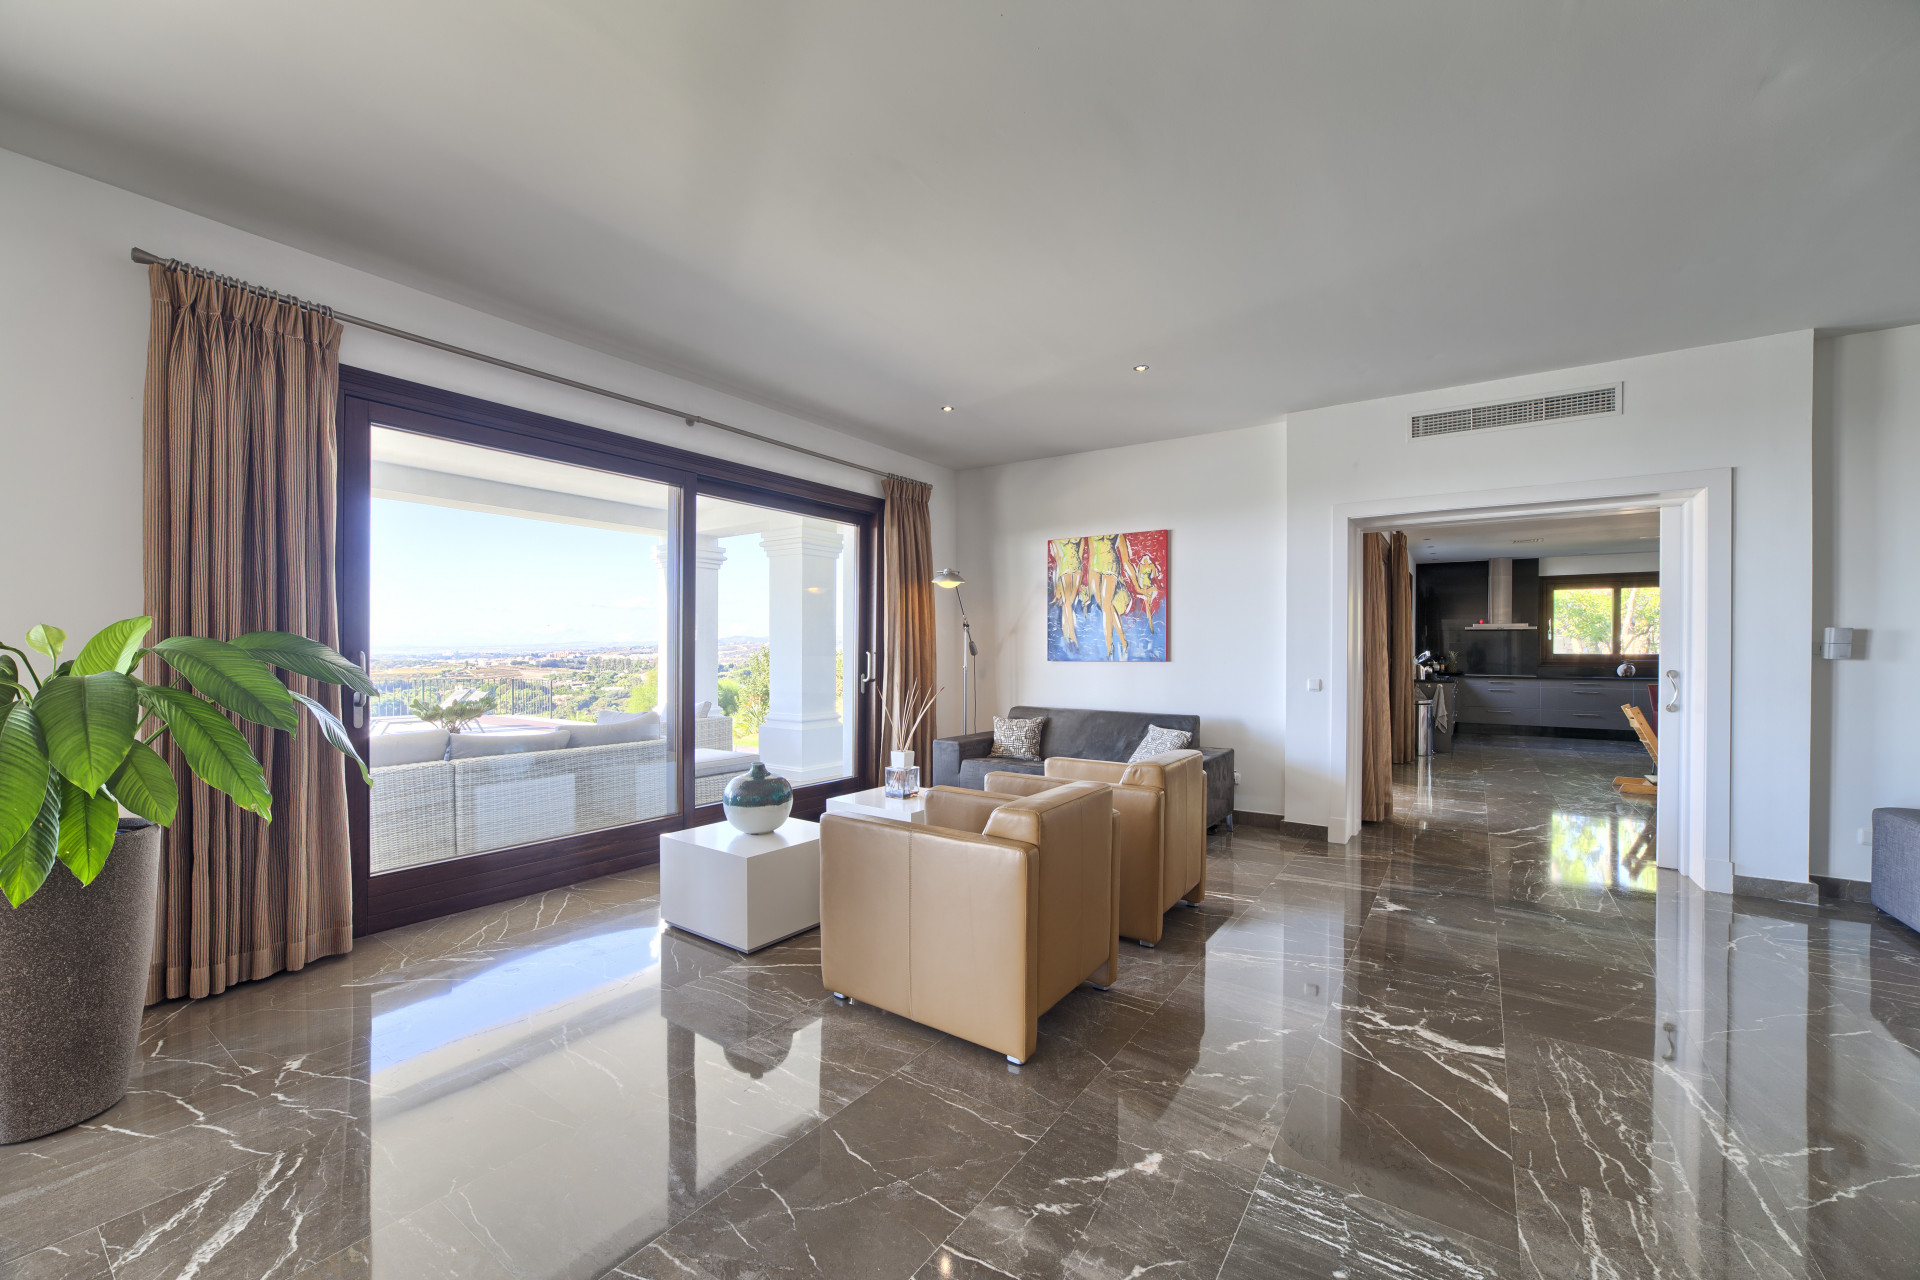 Villa de alta calidad construida con los más altos estándares situada en Los Flamingos Golf Resort, Benahavís.